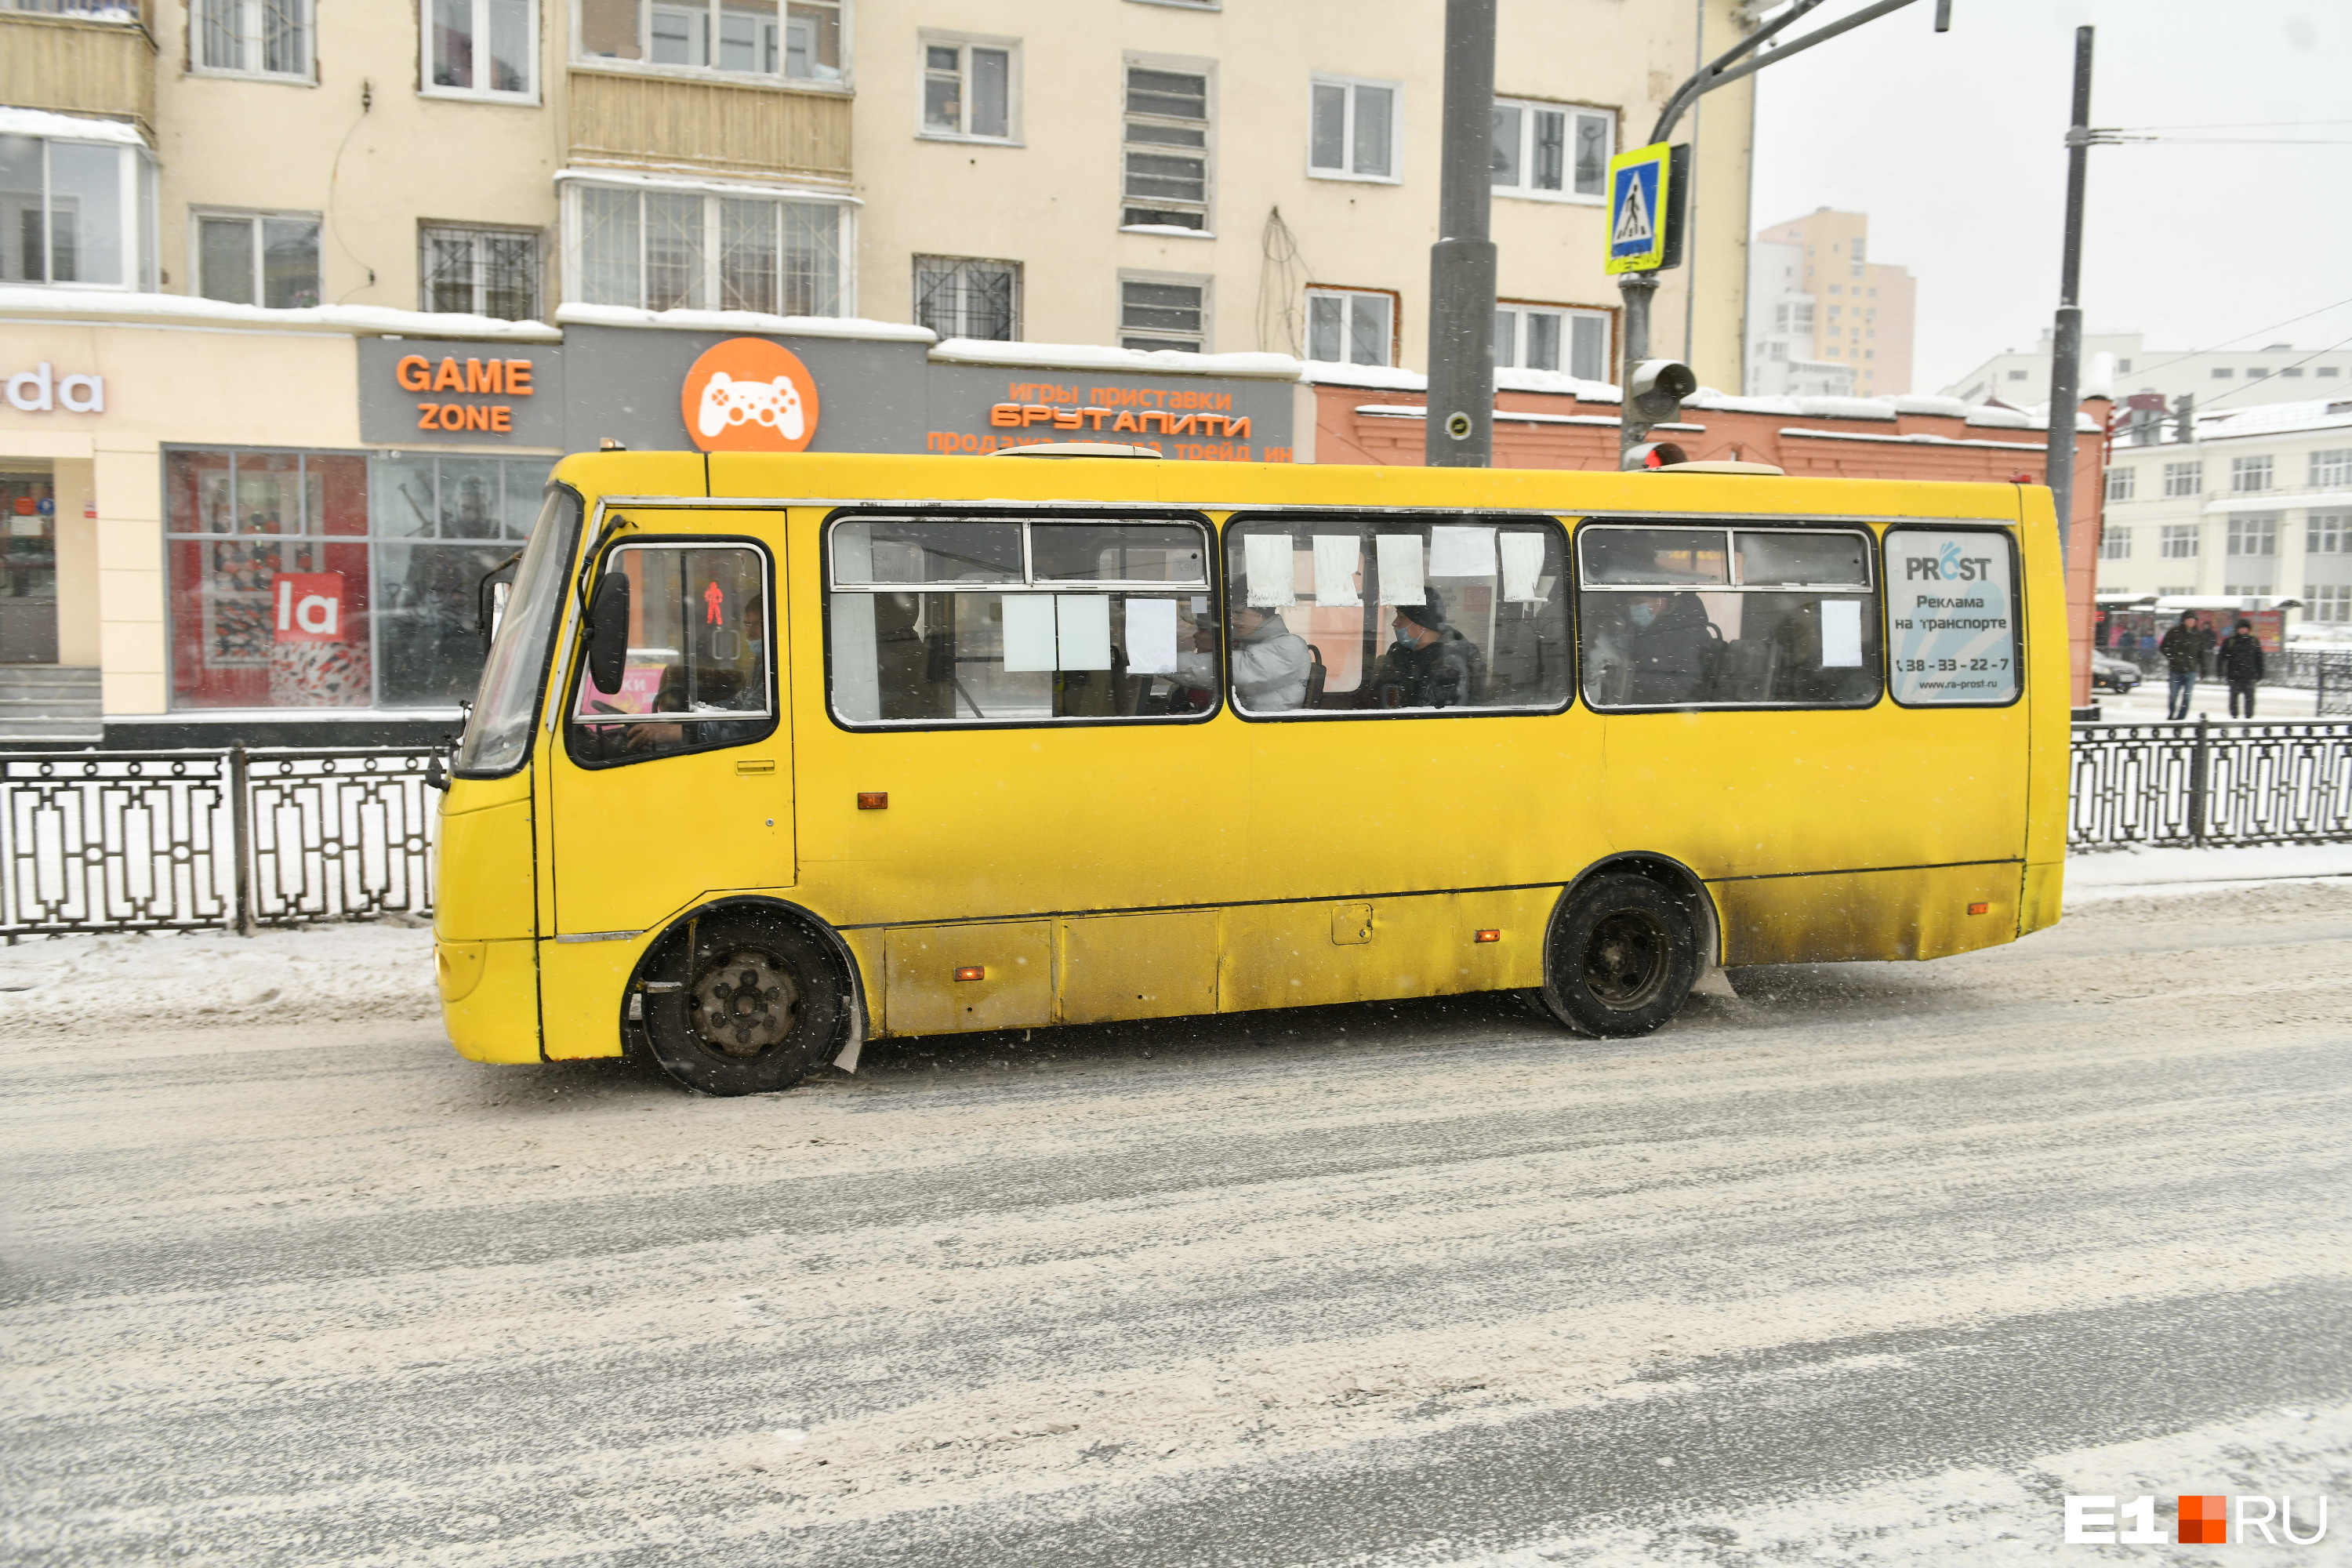 В Екатеринбурге попытались возродить заброшенный автобусный маршрут. Результат оказался провальным